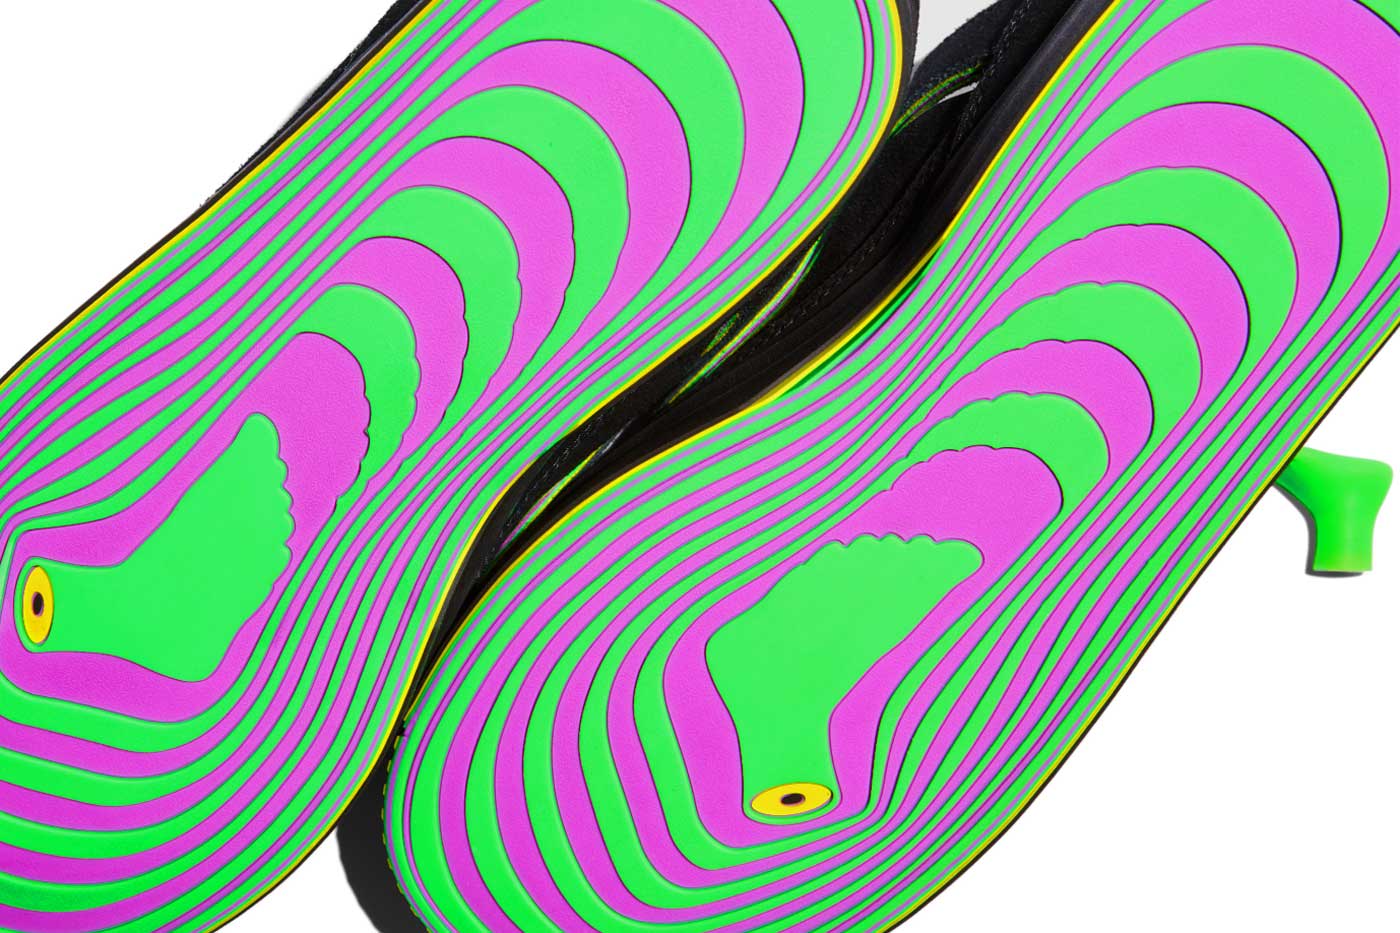 MSCHF's Second Gobstomper Shoes Have Sour Gobstopper Colors